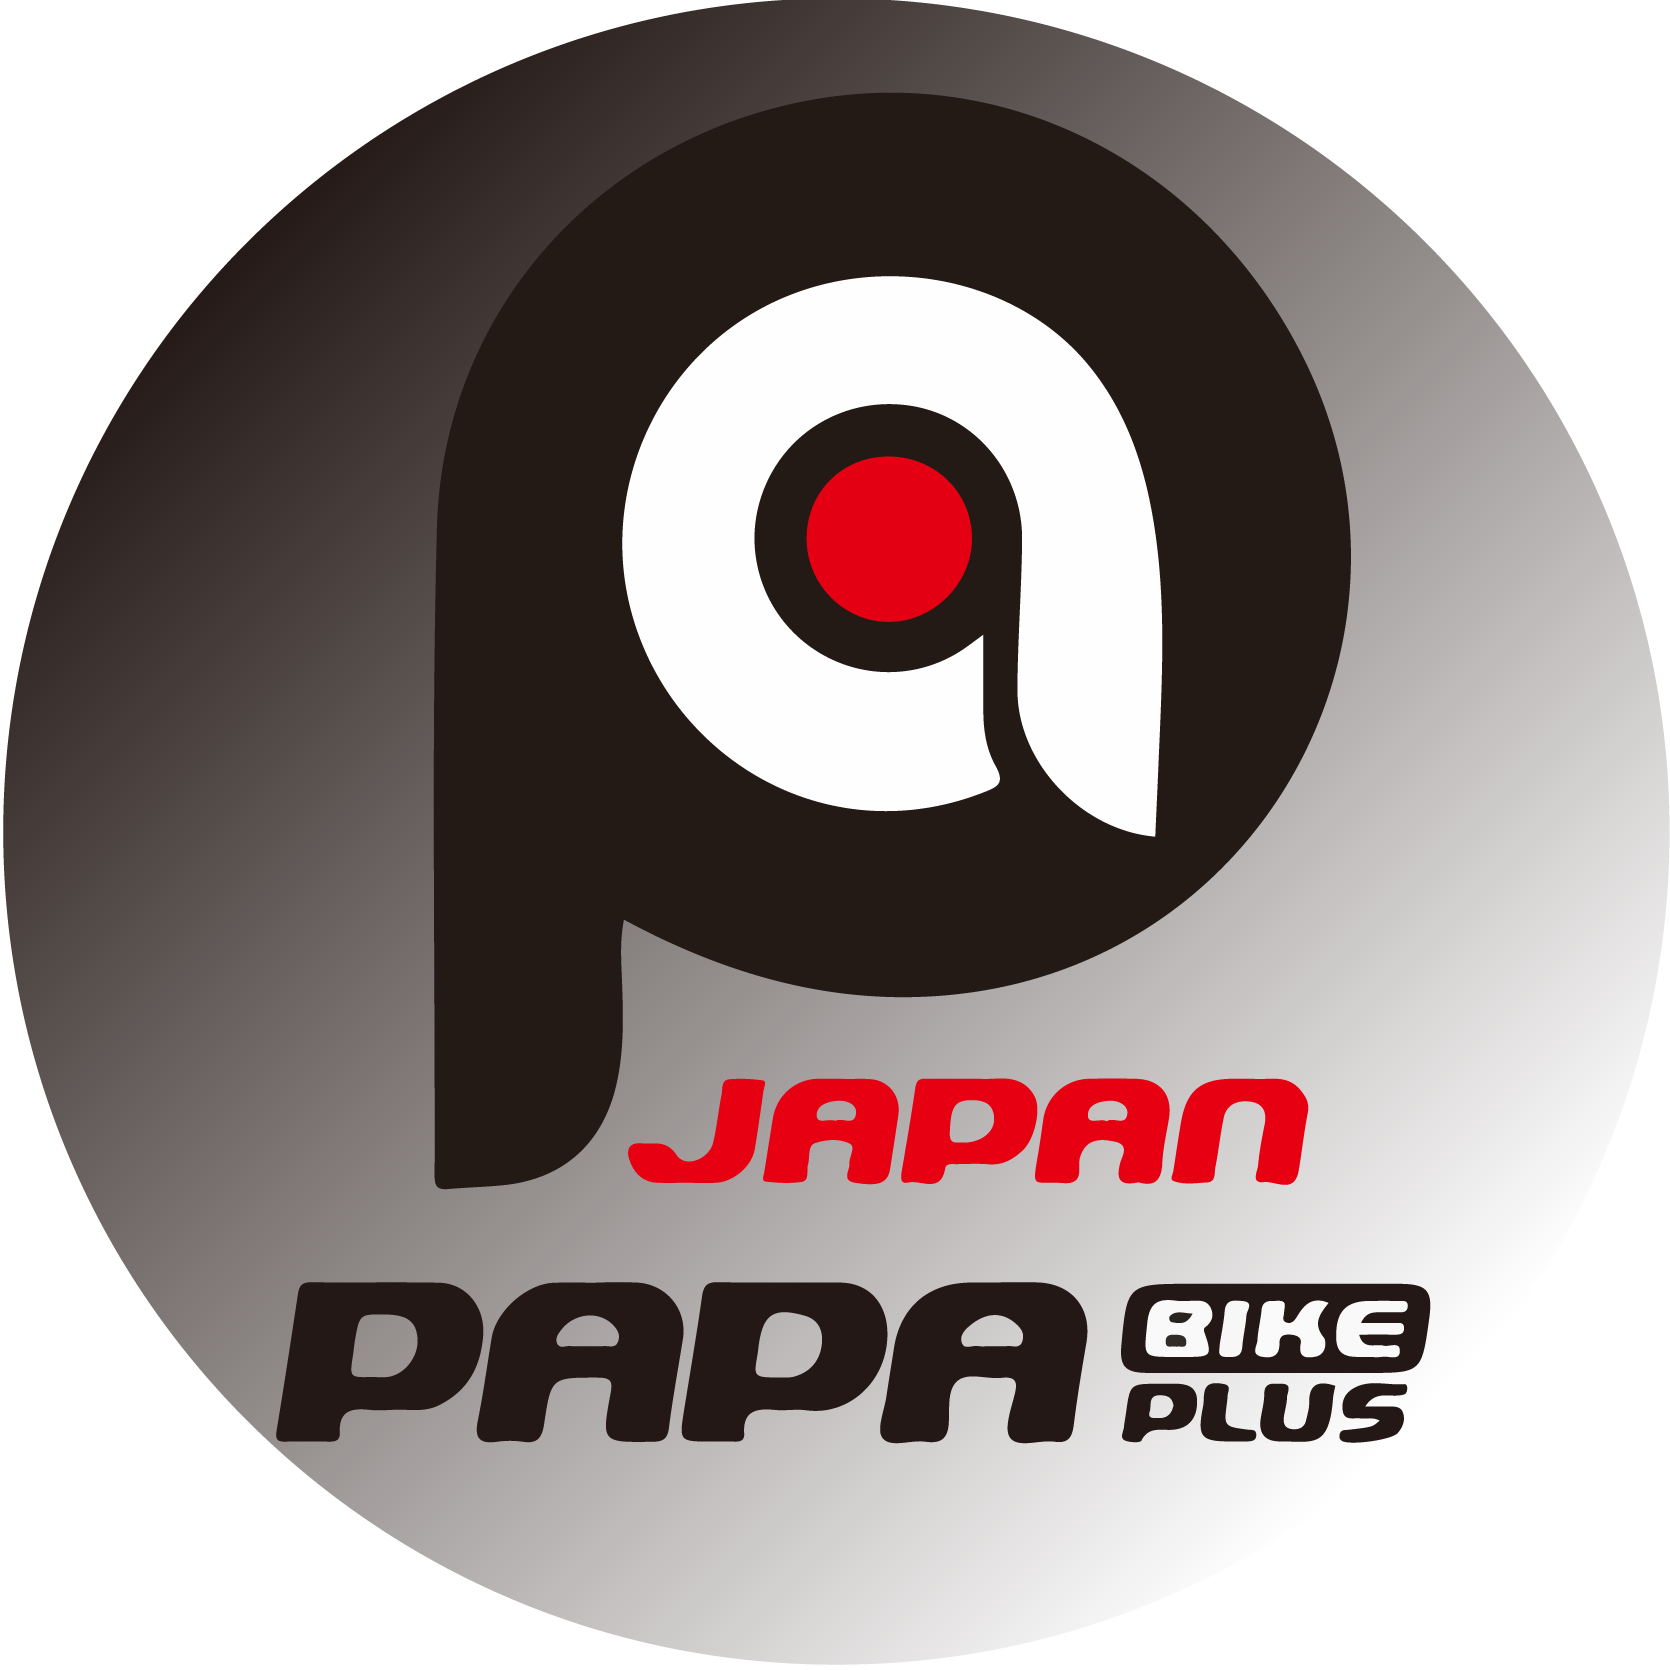 PAPABIKE JAPAN